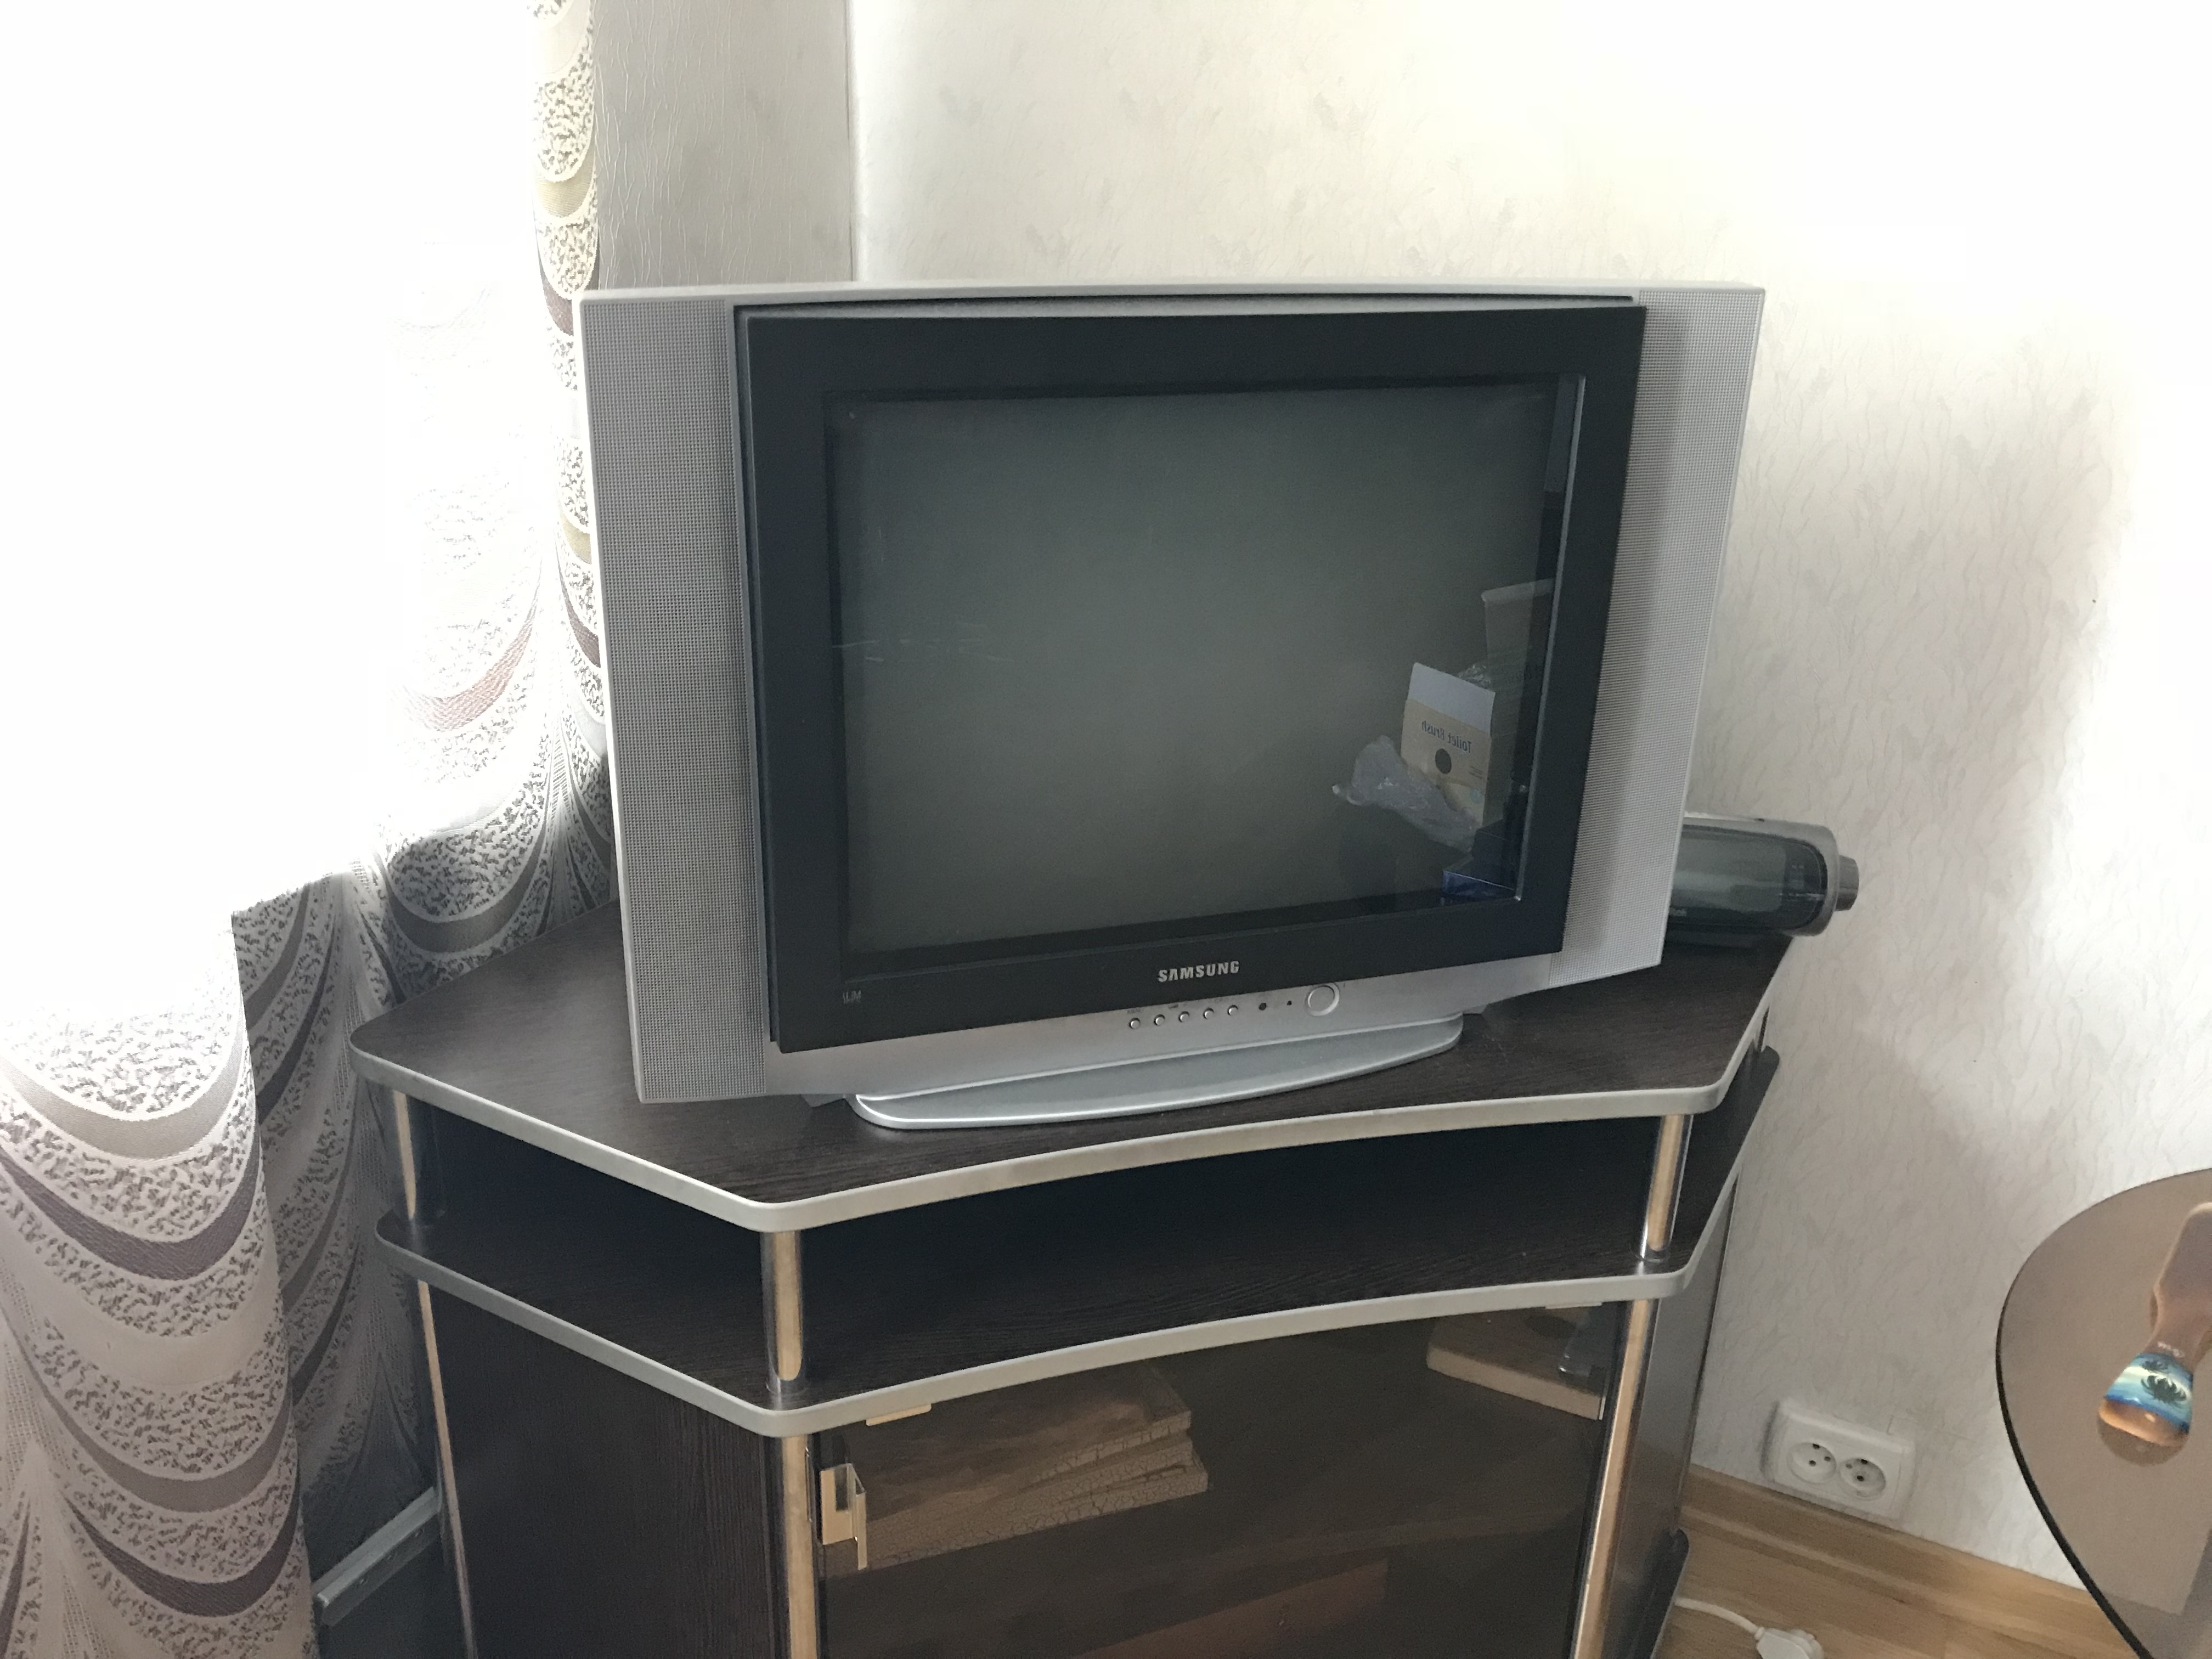 Продать телевизор спб